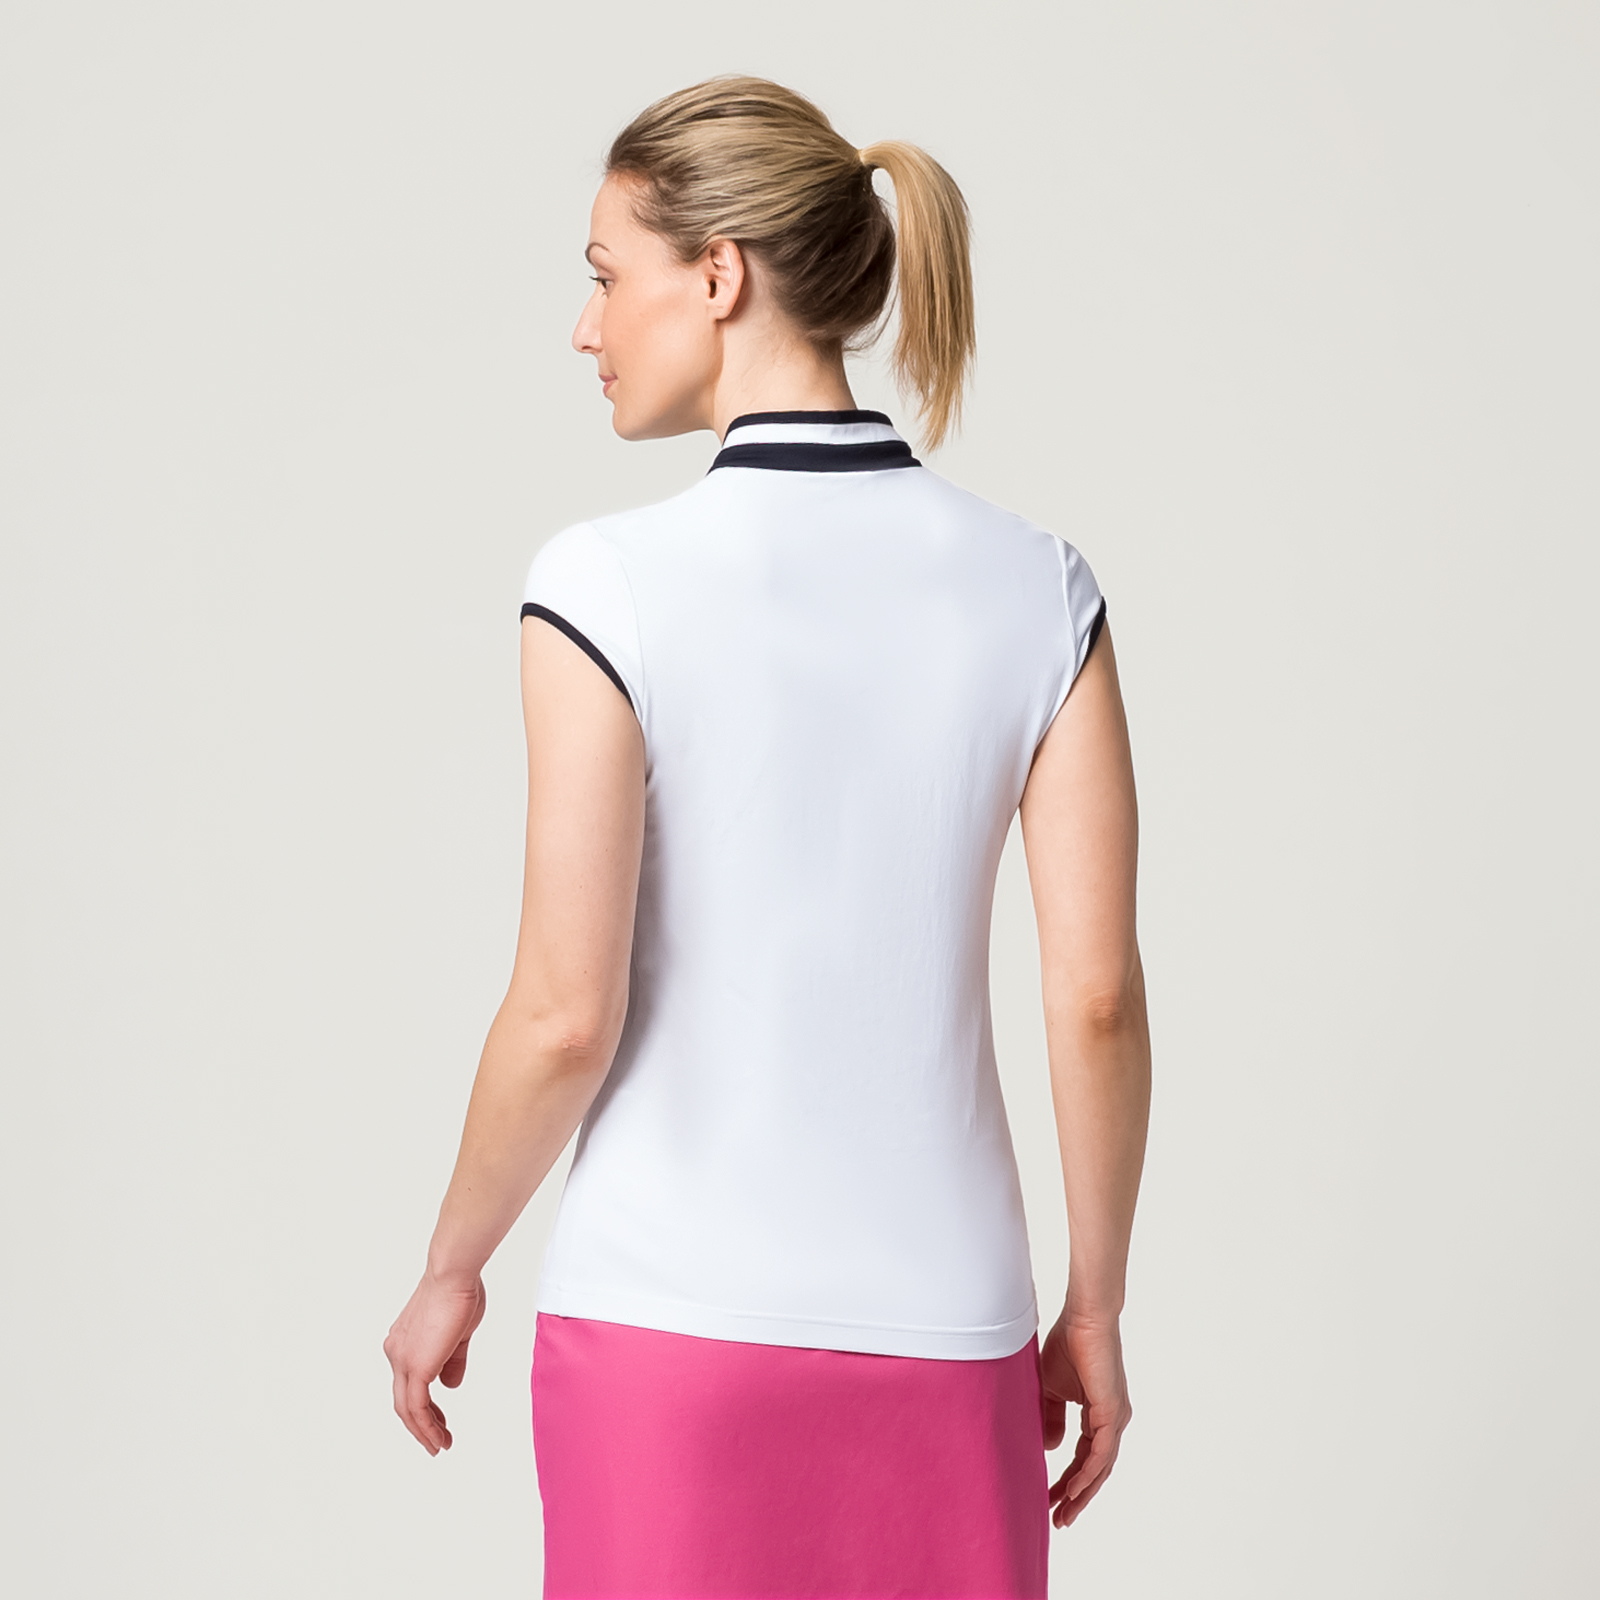 Damen Poloshirt mit Troyer-Kragen und Flügelarm aus Sonnenschutz-Stoff